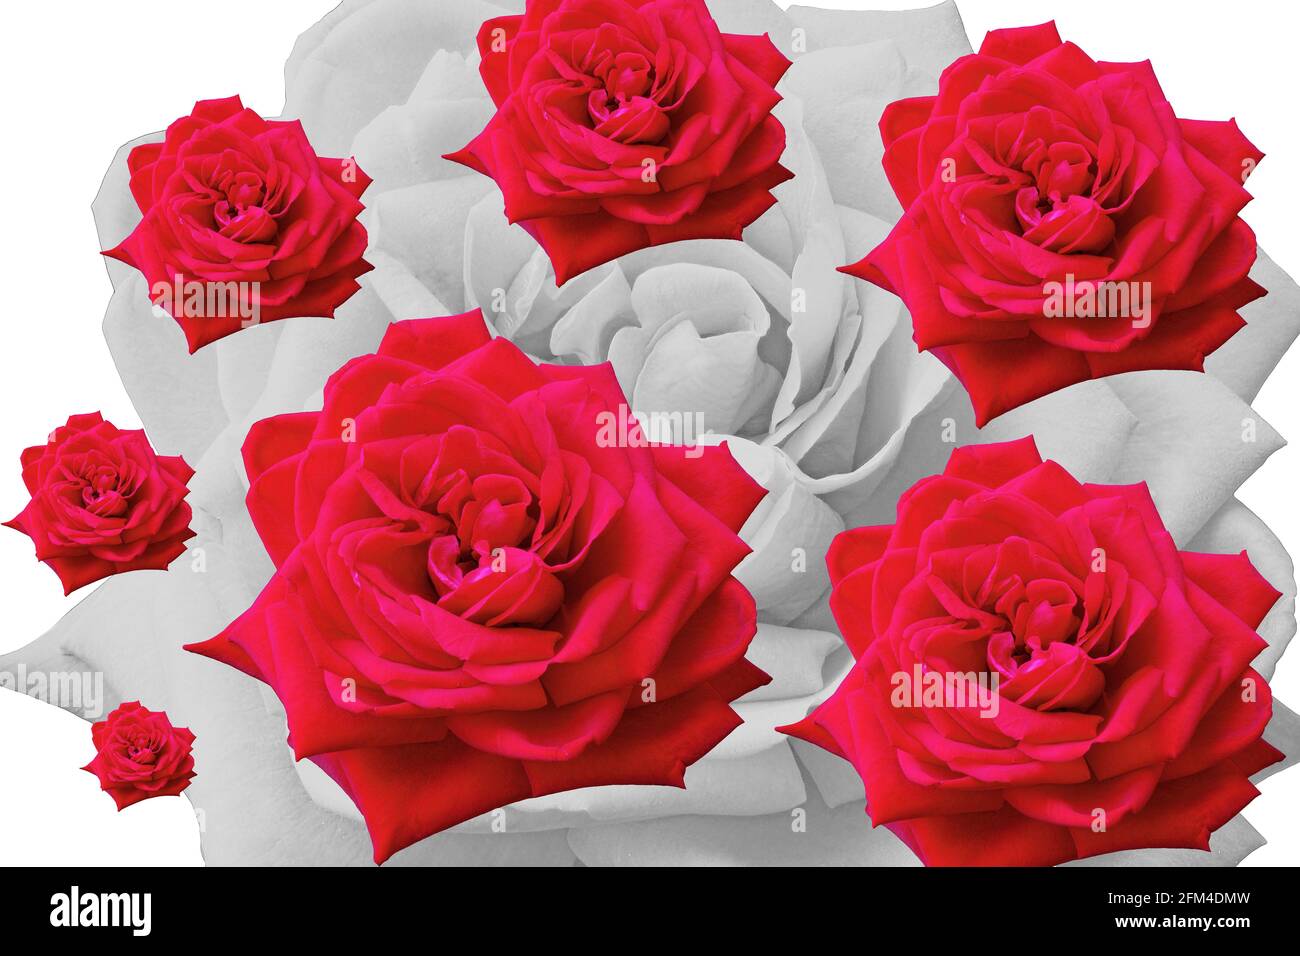 composizione con rosa rossa isolata e replicata in varie dimensioni Foto Stock